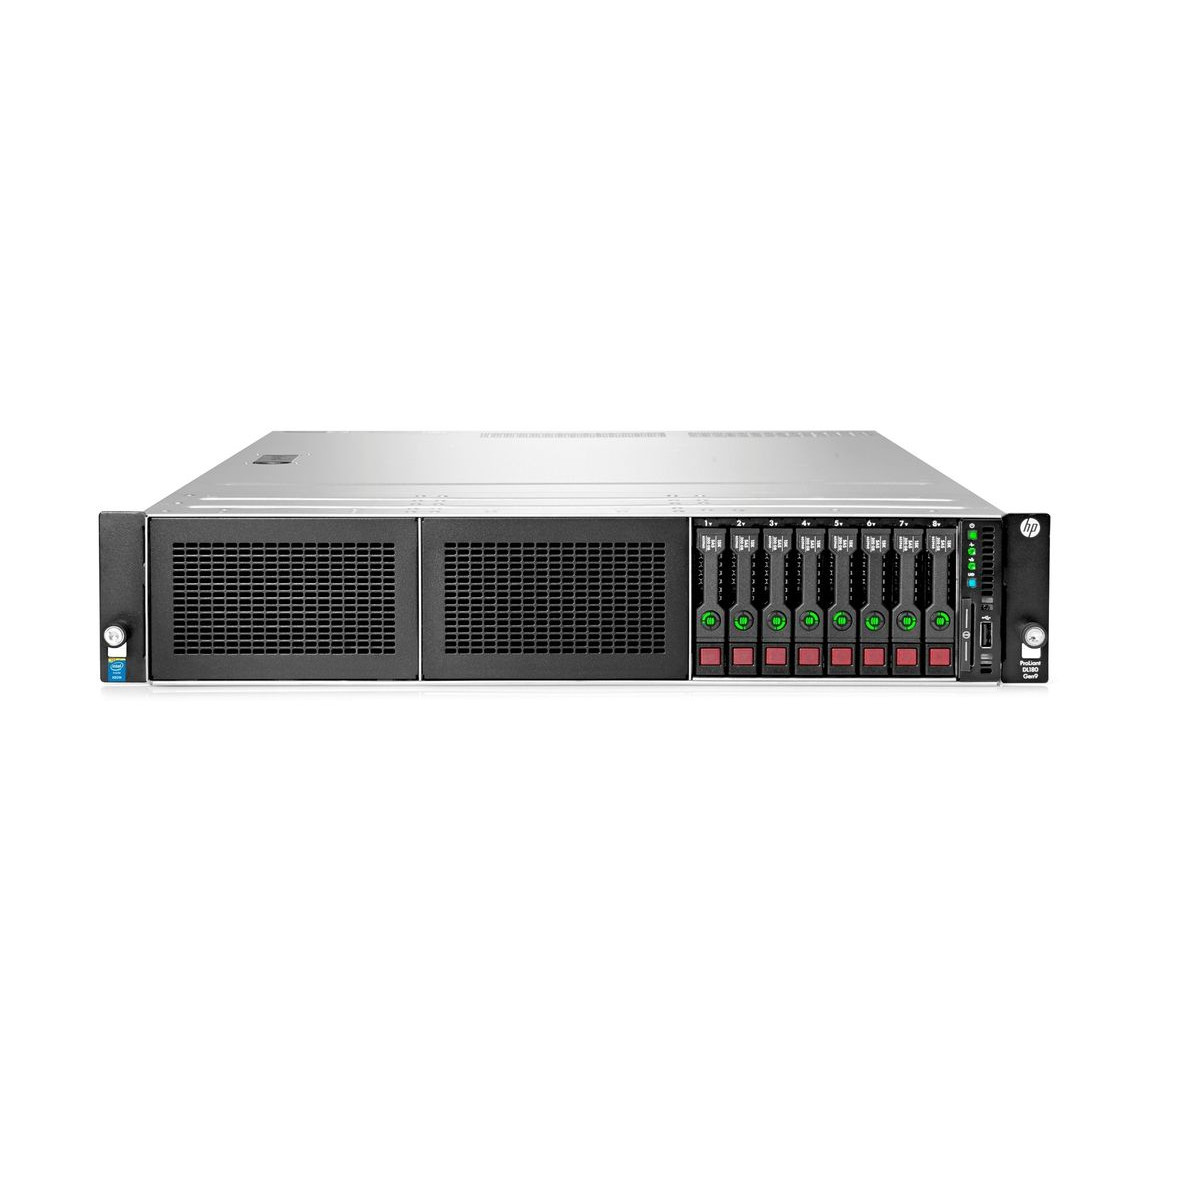 HP DL380 GEN9 E5-2670 v3 128GB 4x1.8TB SAS P440AR